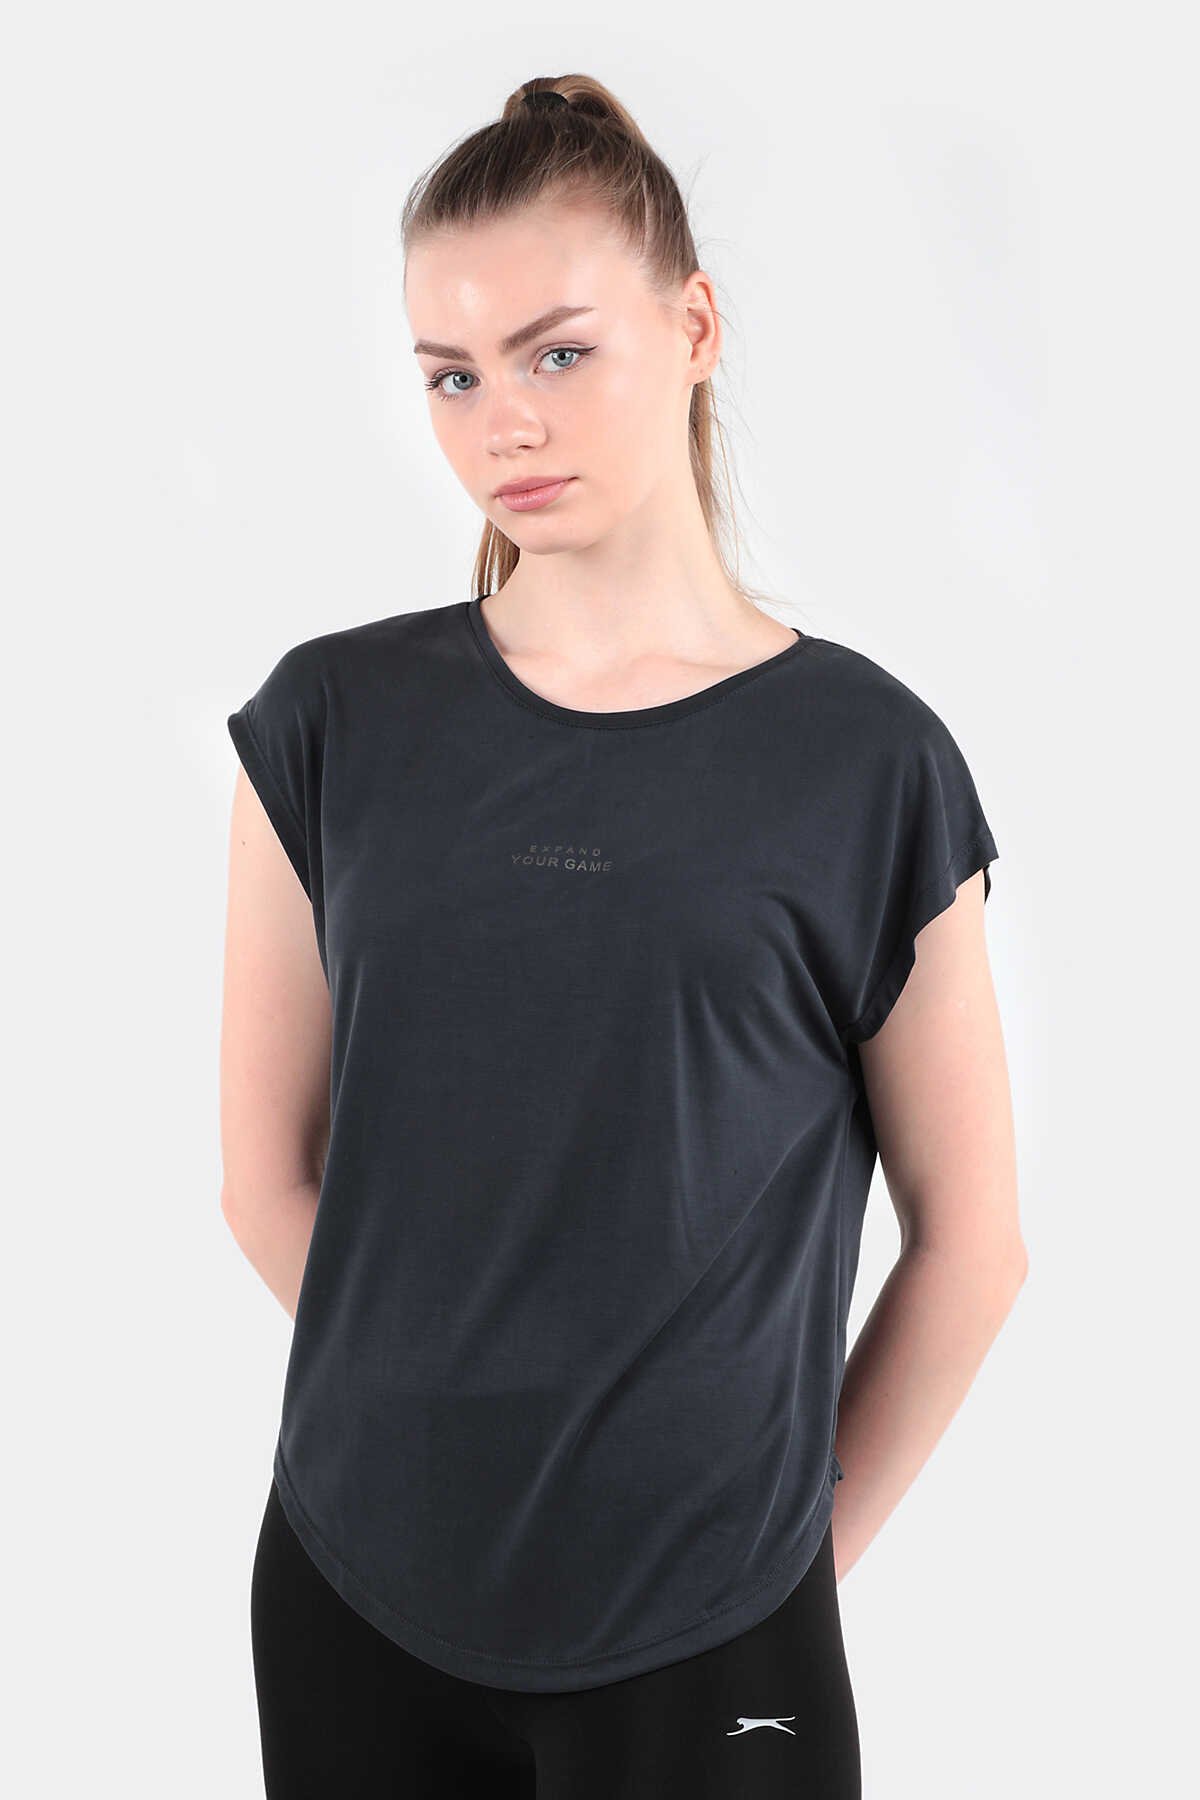 Slazenger - POLINA Kadın Kısa Kollu T-Shirt Koyu Gri